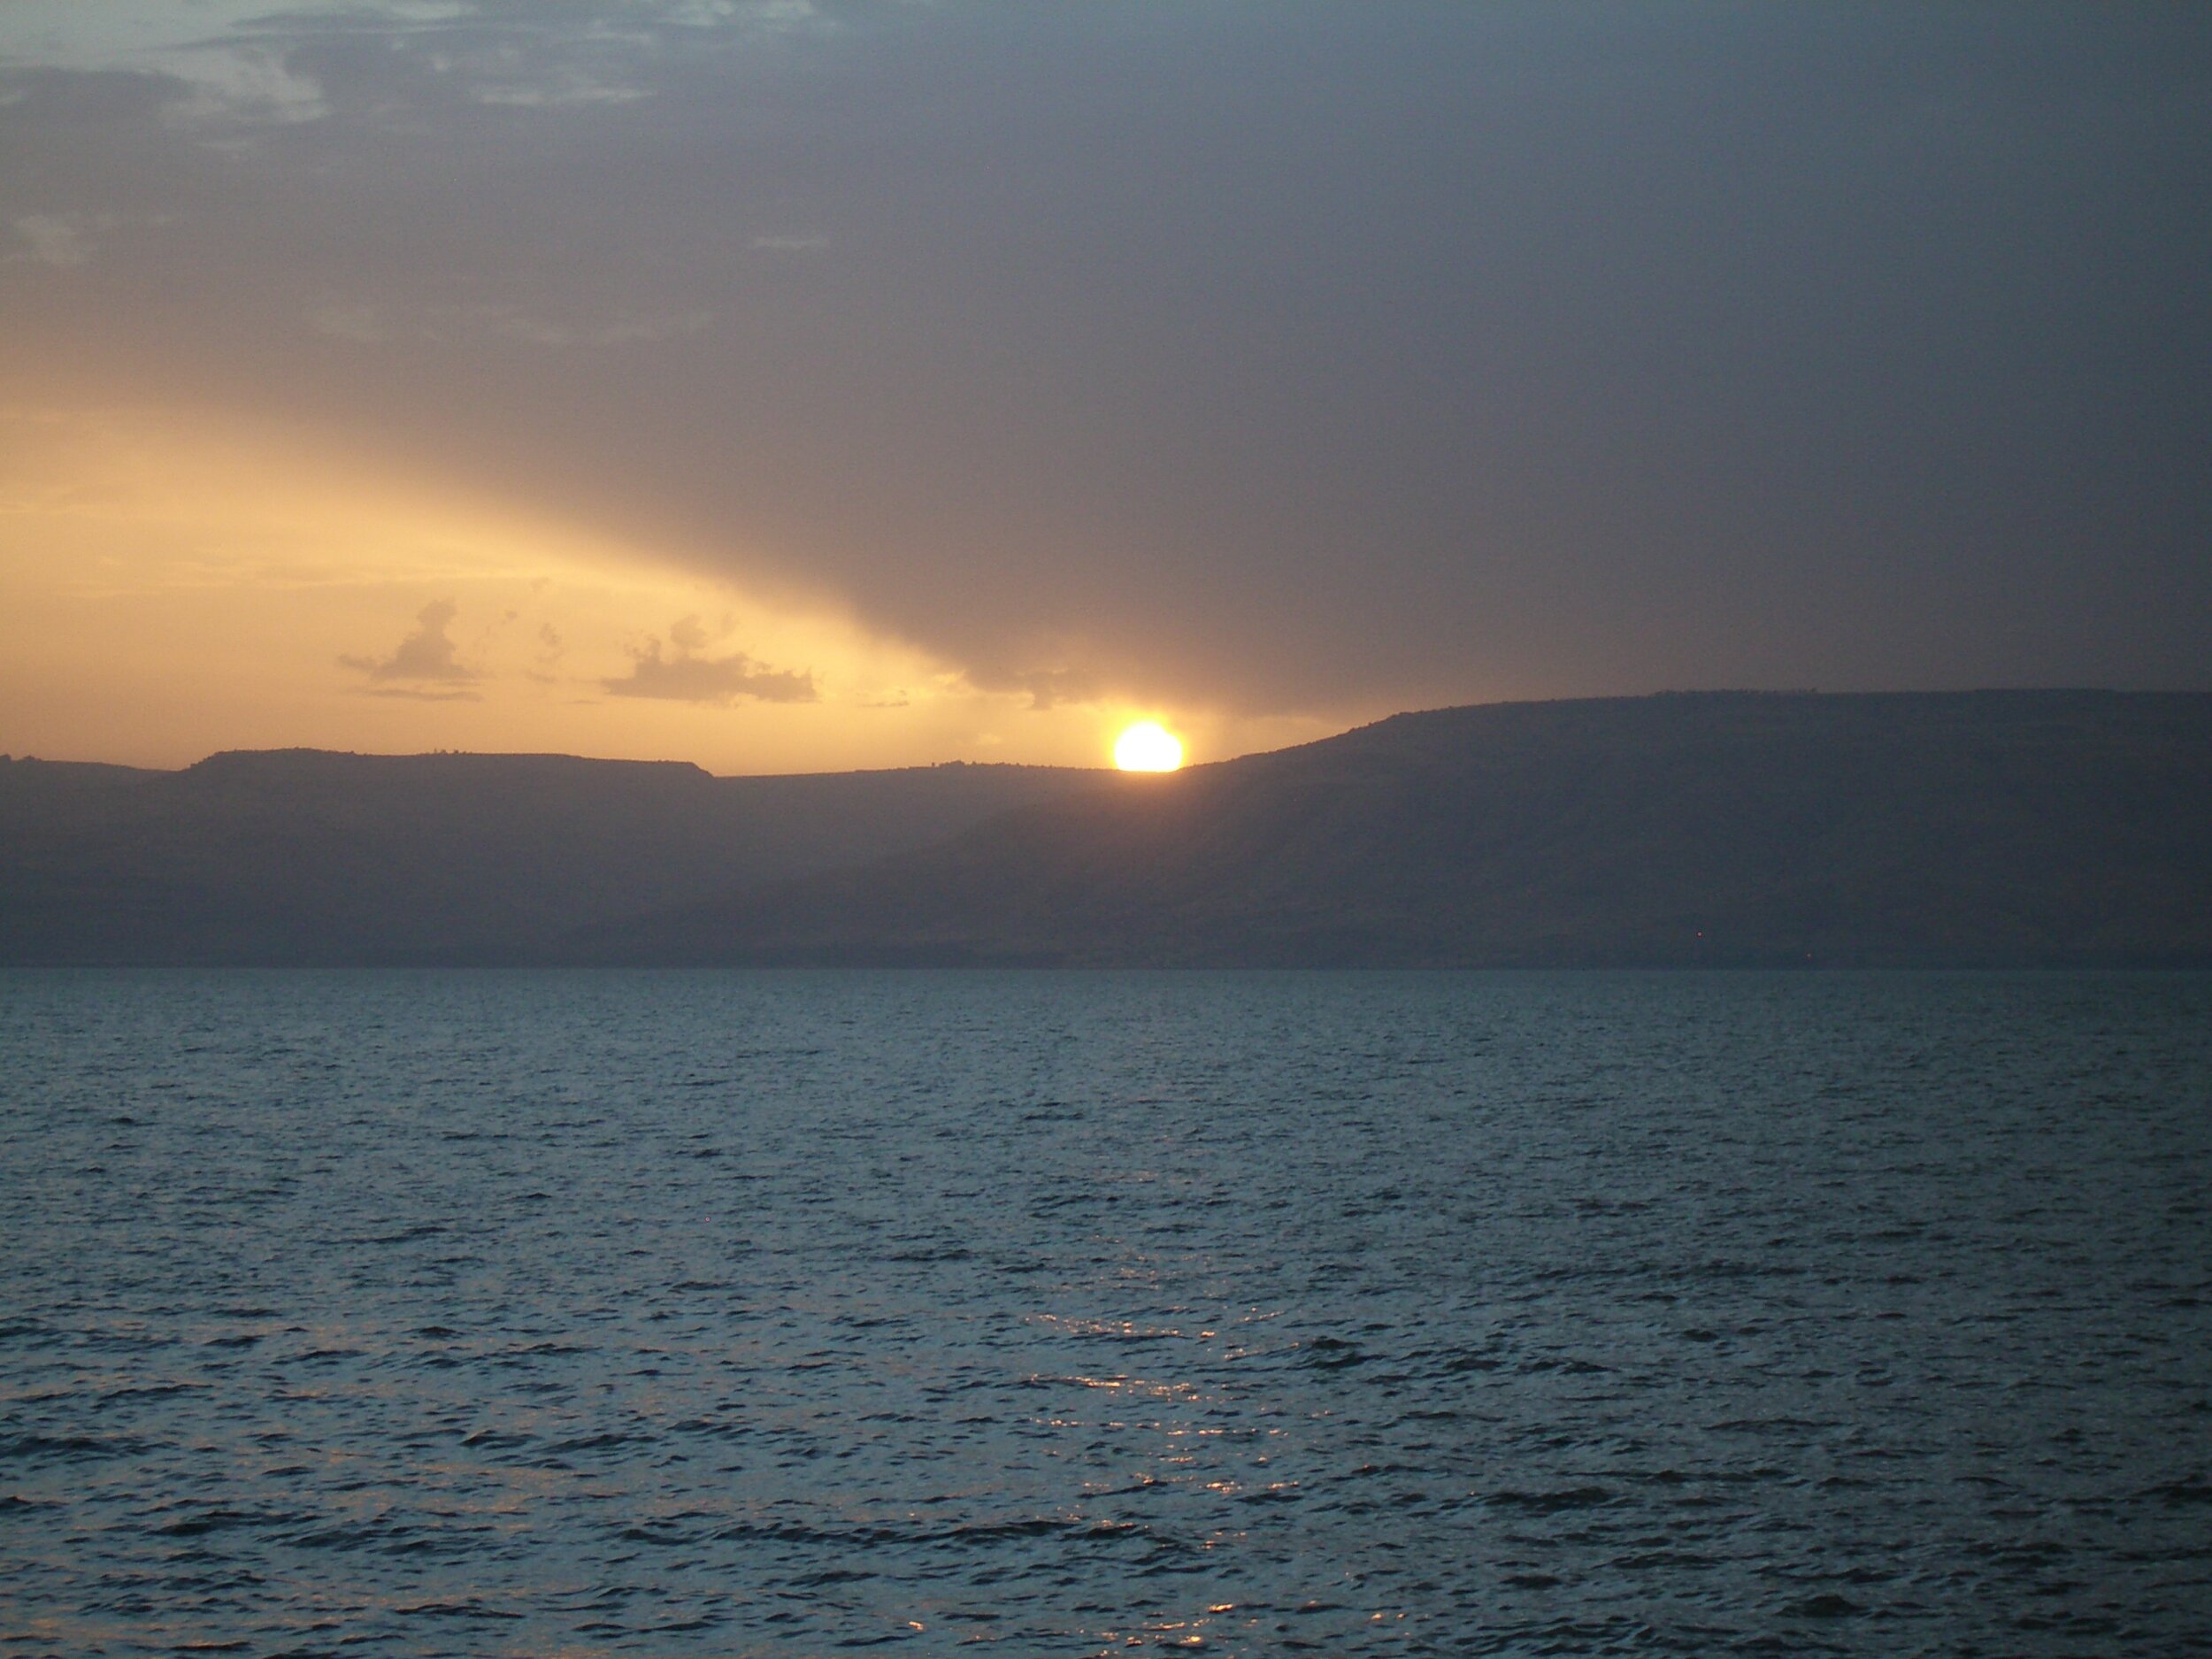  Sunrise on the Galilee 